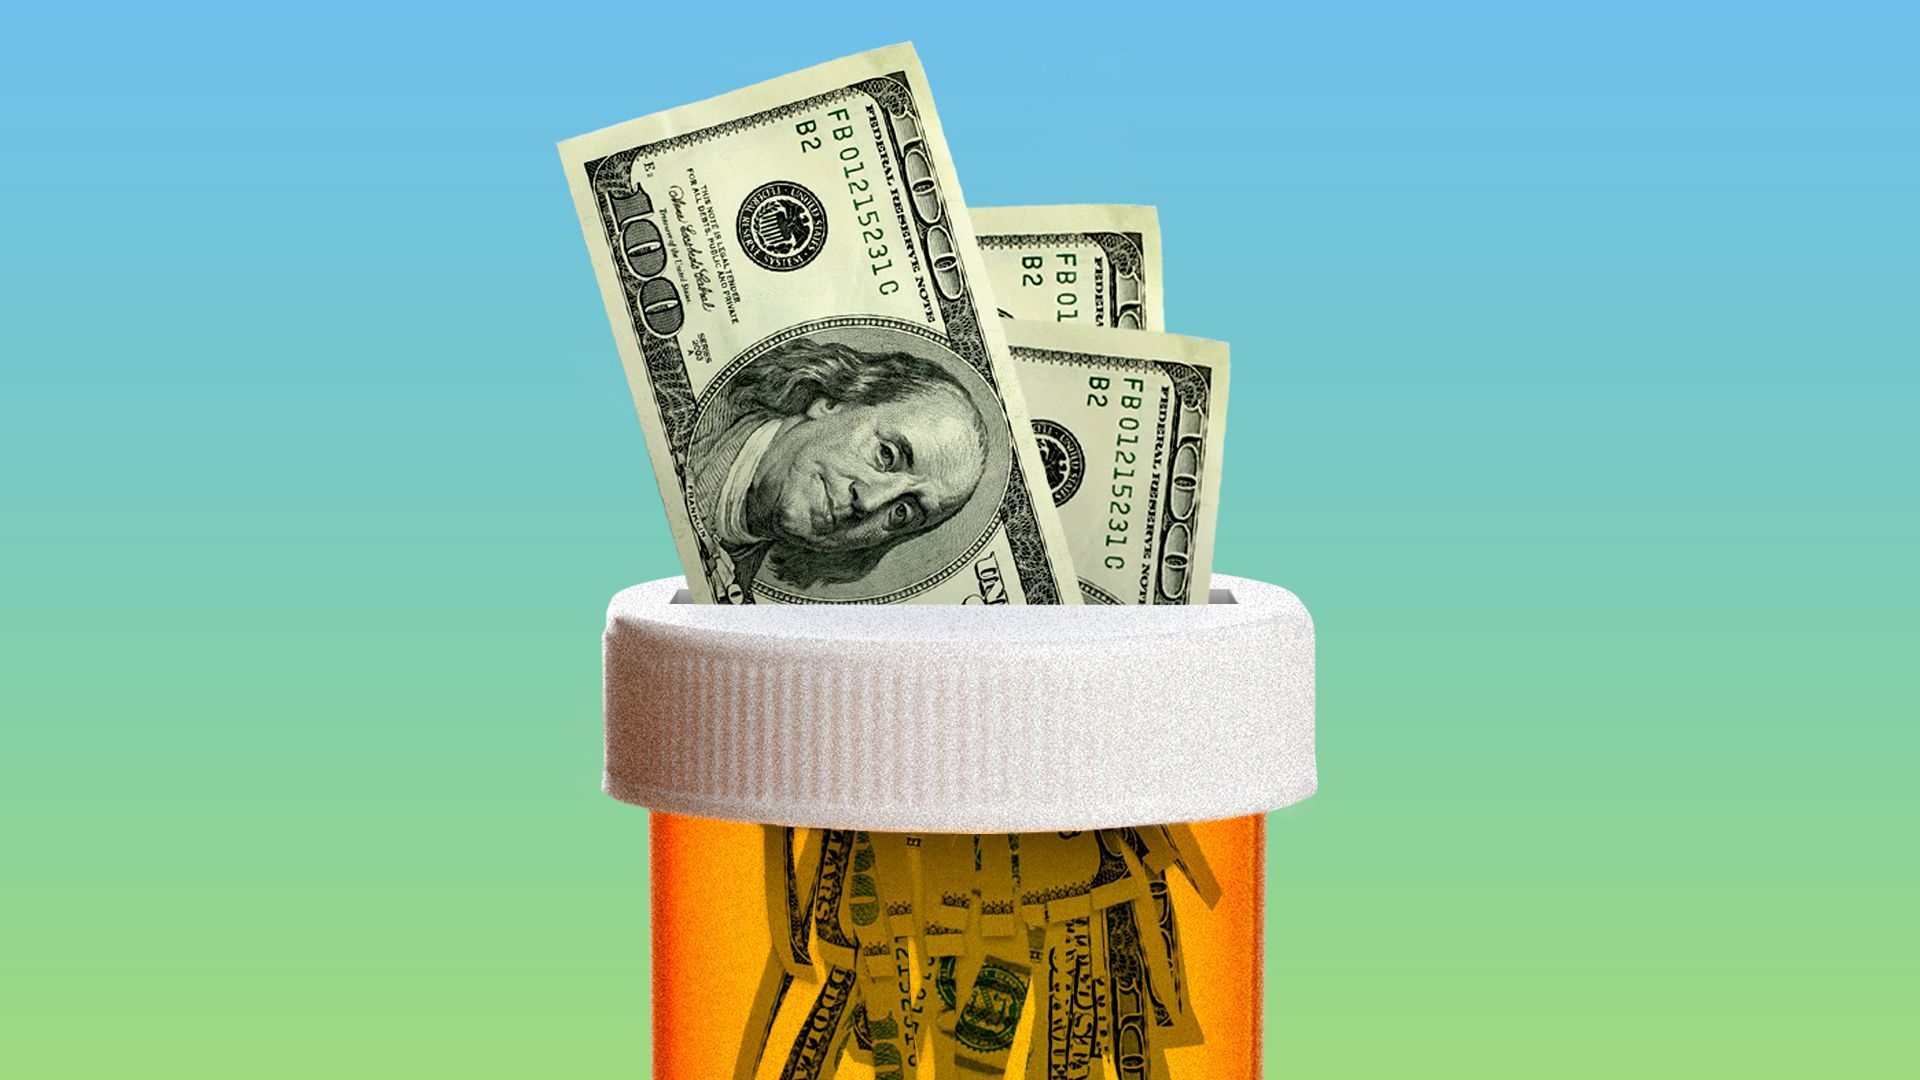 an illustration of money being shredded inside of an orange prescription bottle